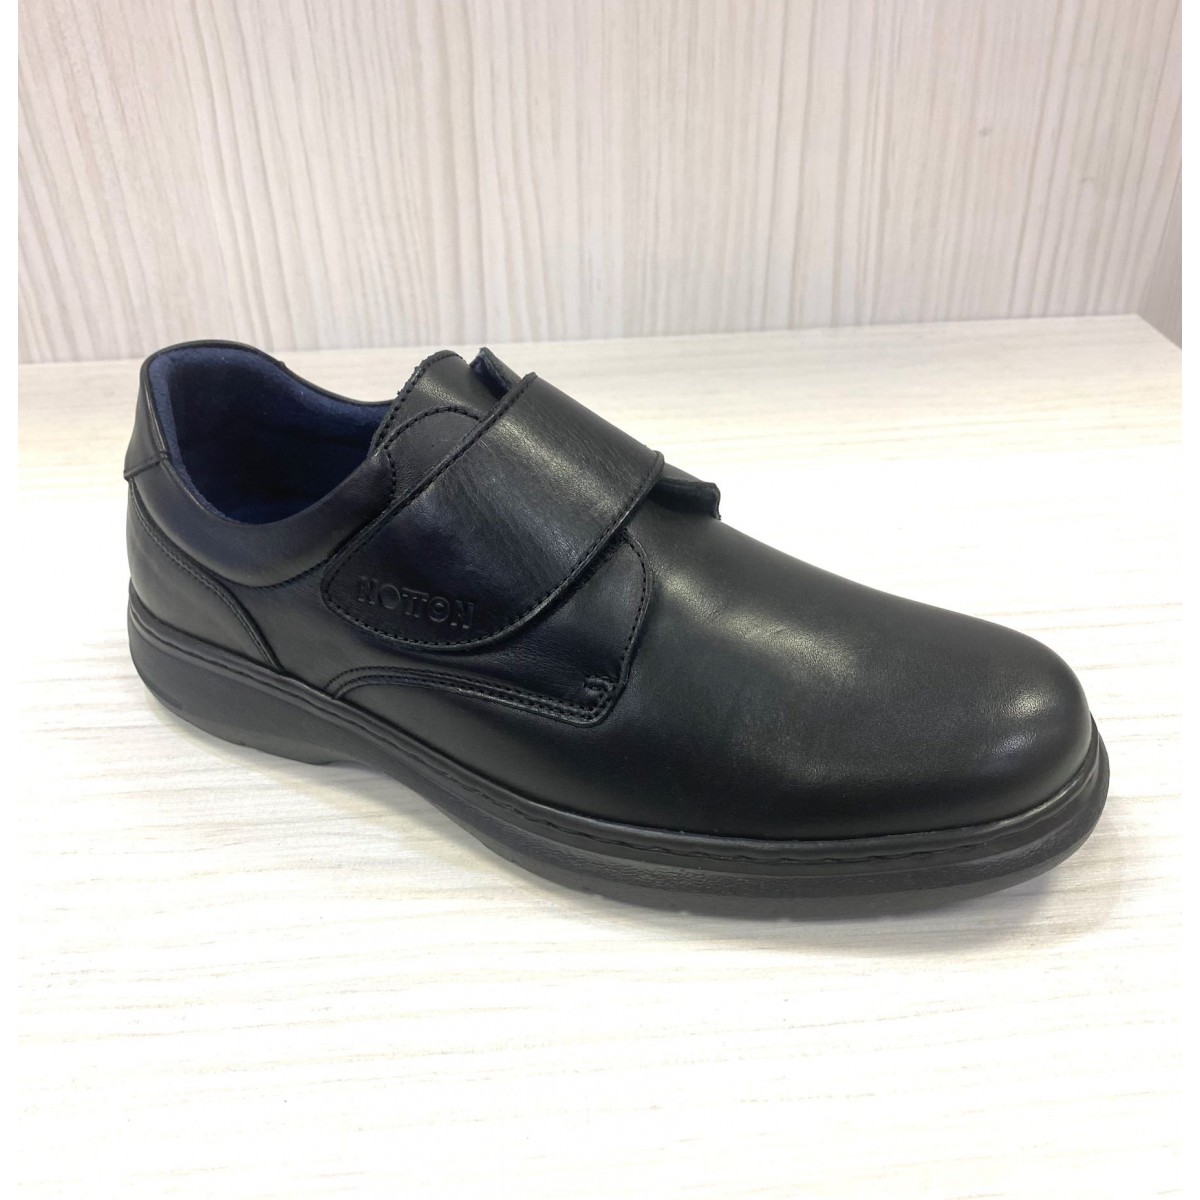 Notton zapato velcro ancho especial hombre en negro N0103